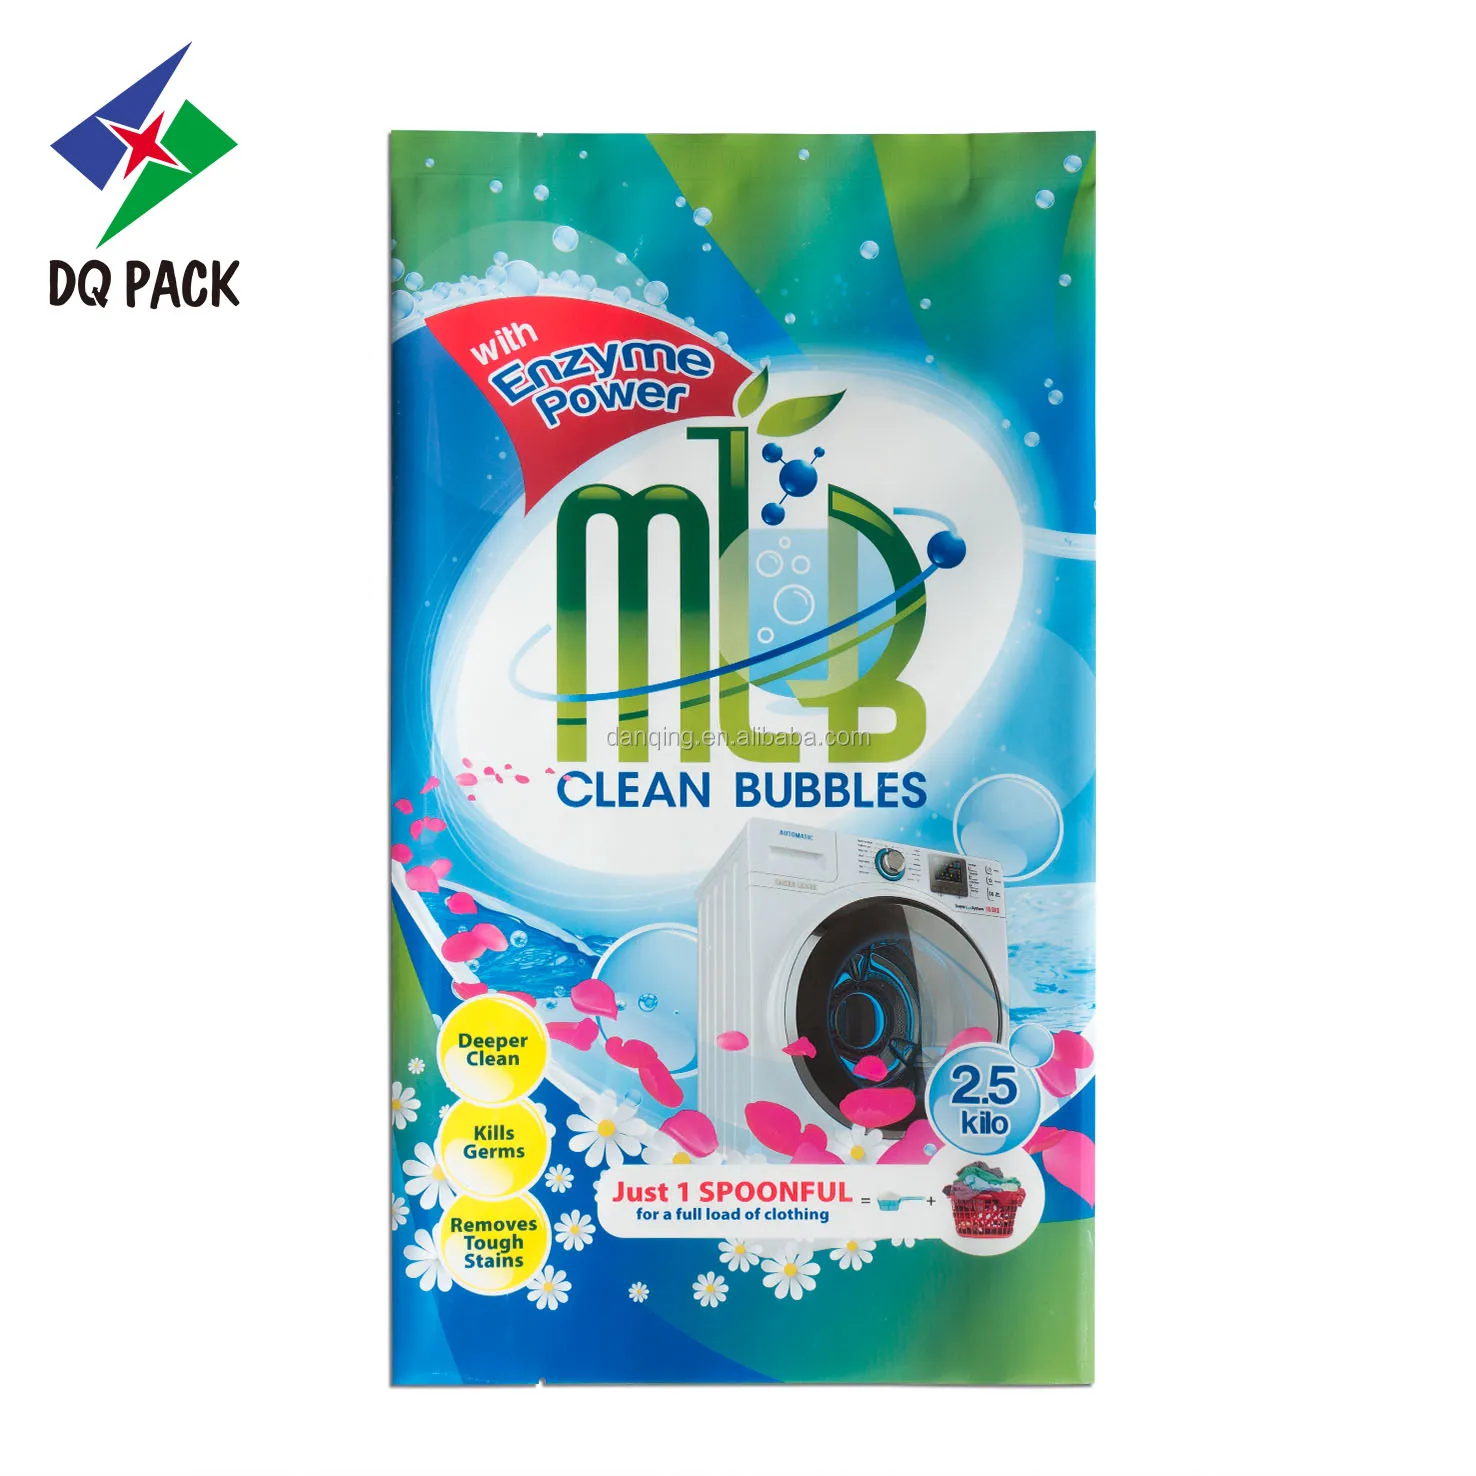 DQ PACK Customized Washing Powder Bag Center Sealing Bag